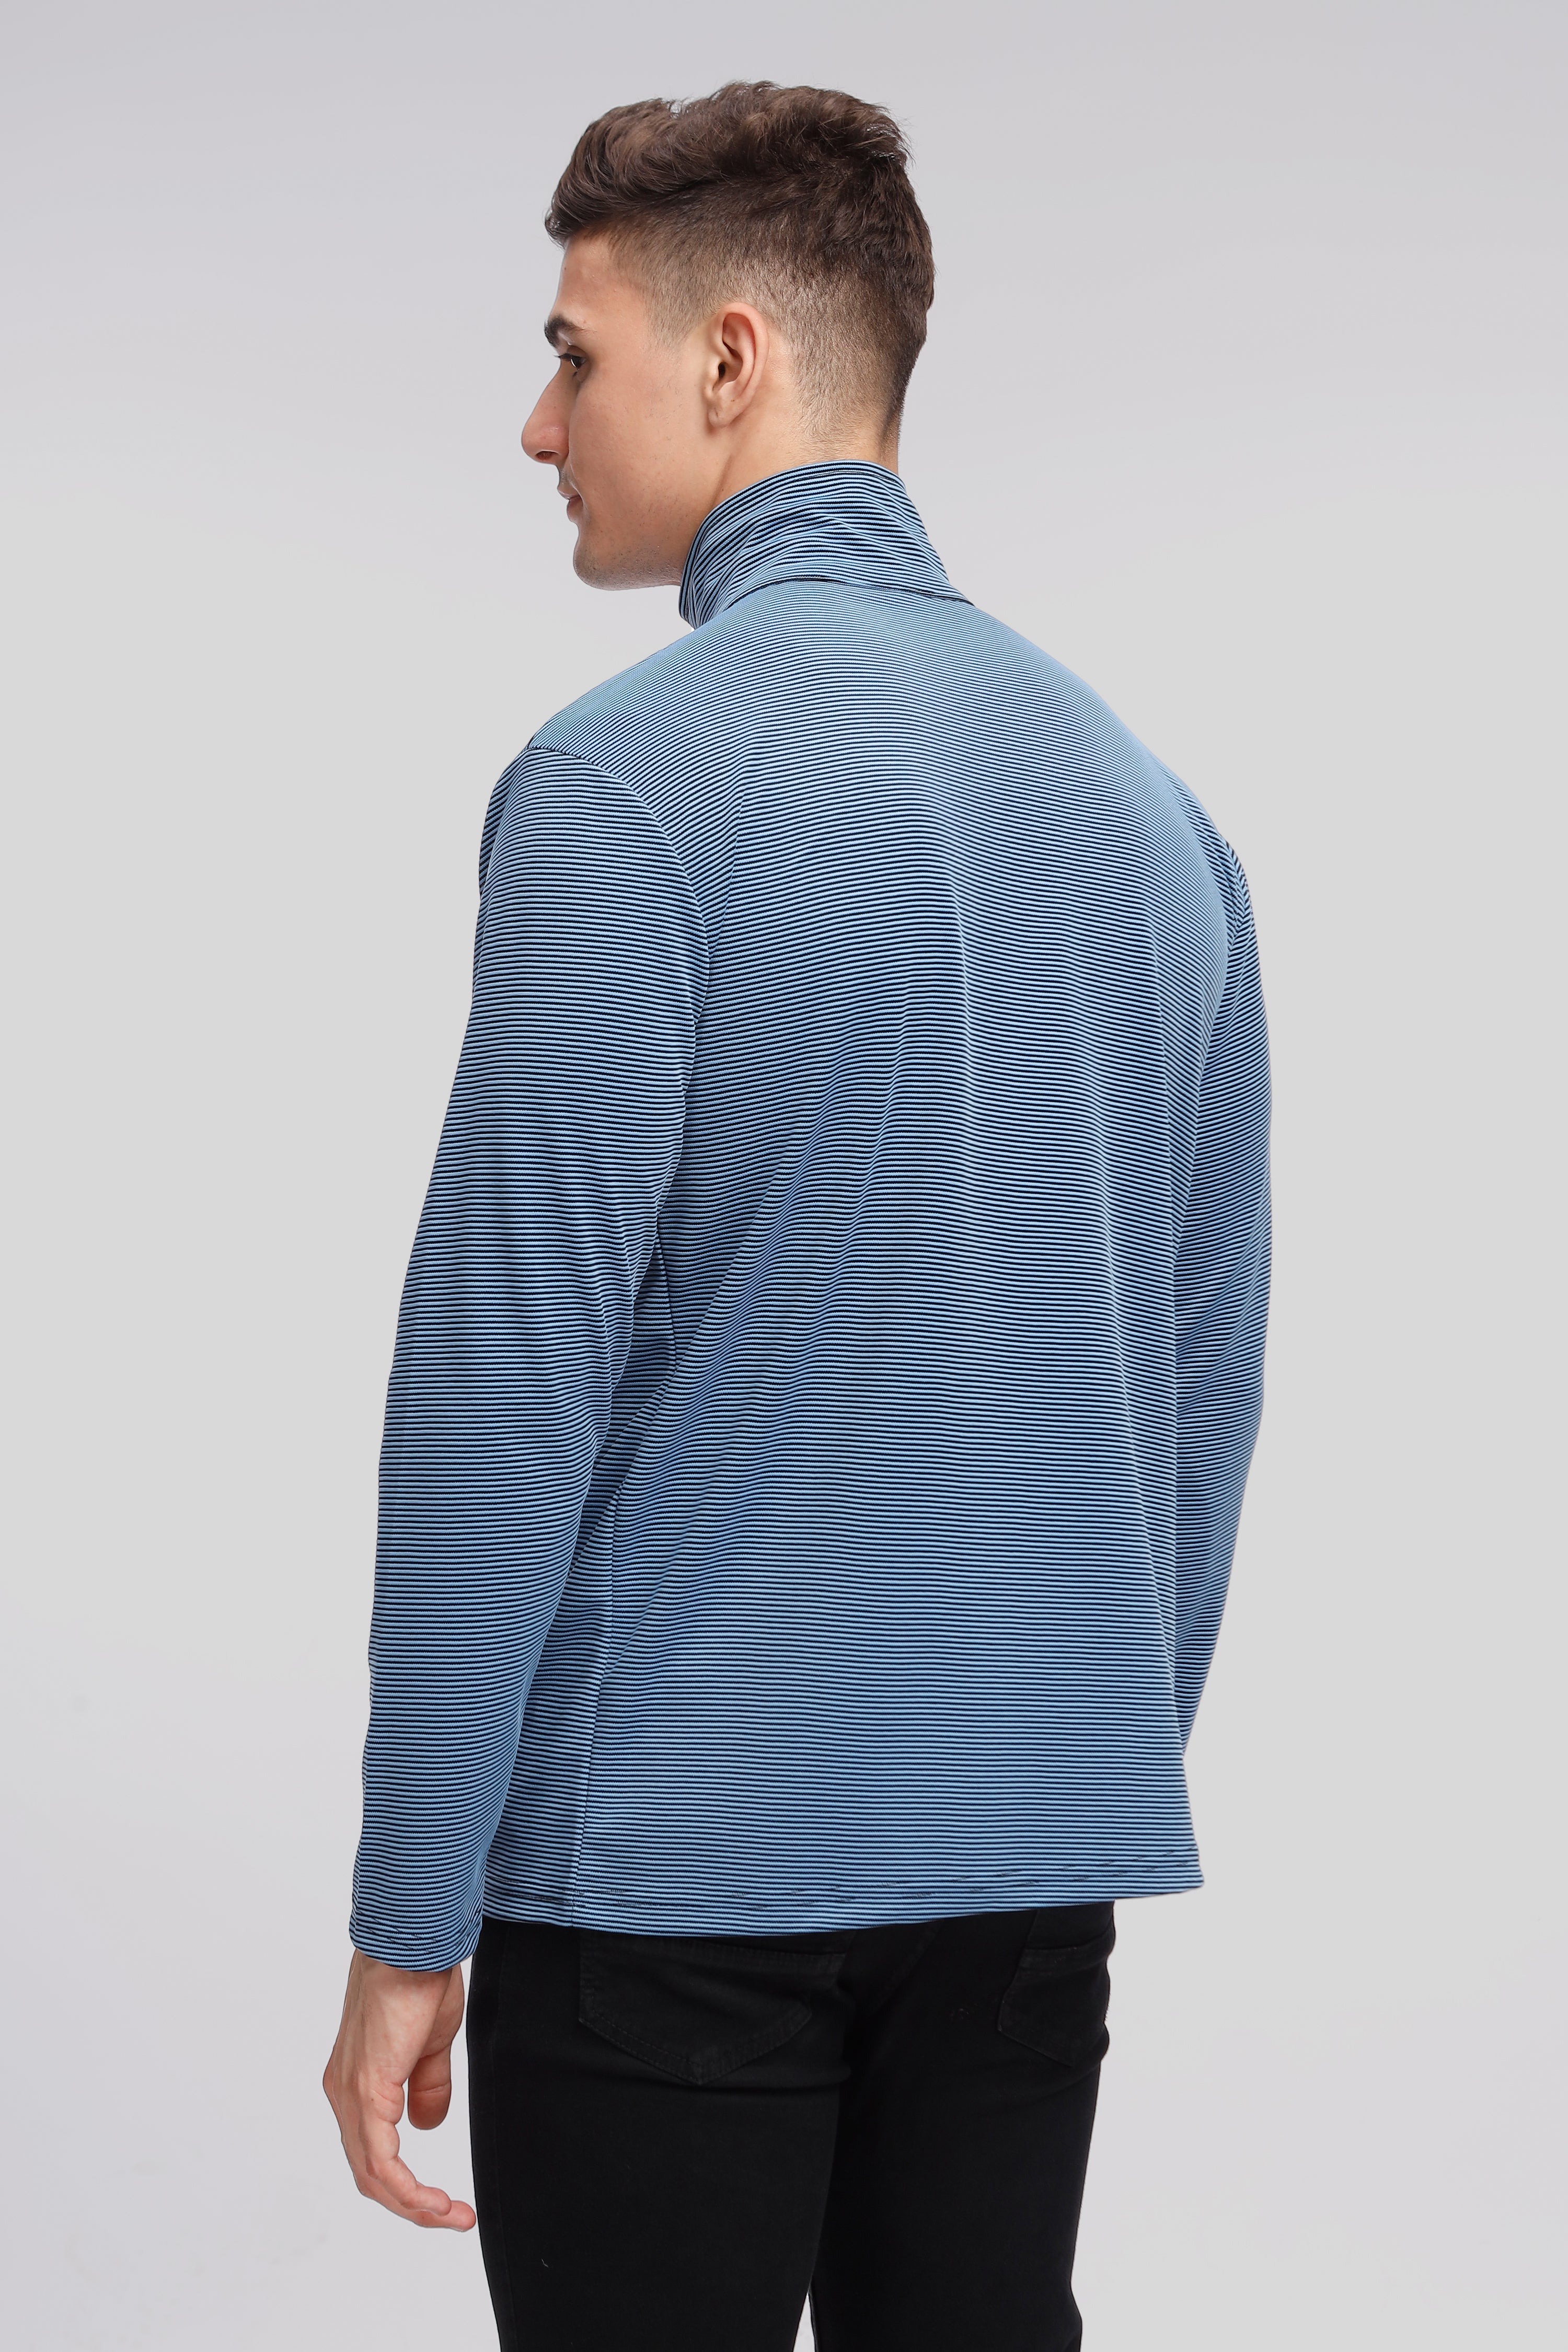 Blue Stripes Self Design Zipper T-Shirt